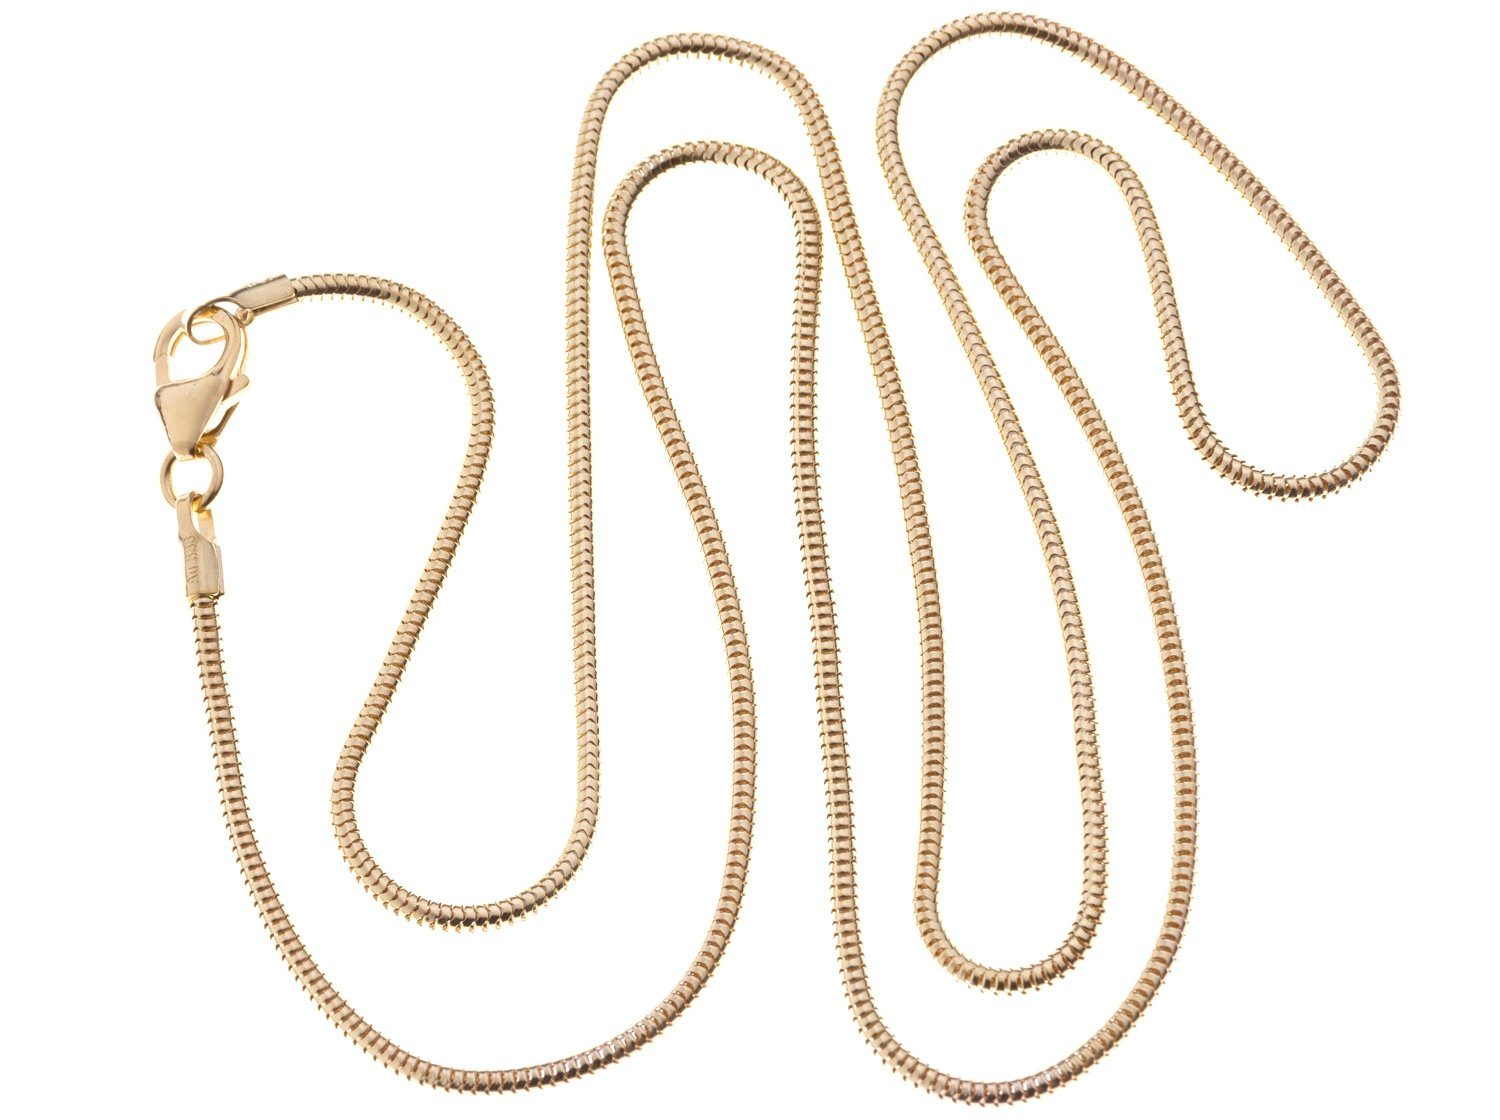 Damen Schmuck Silberkettenstore Goldkette Schlangenkette - 333 Gold 1,4mm Durchmesser, wählbar 38-90cm